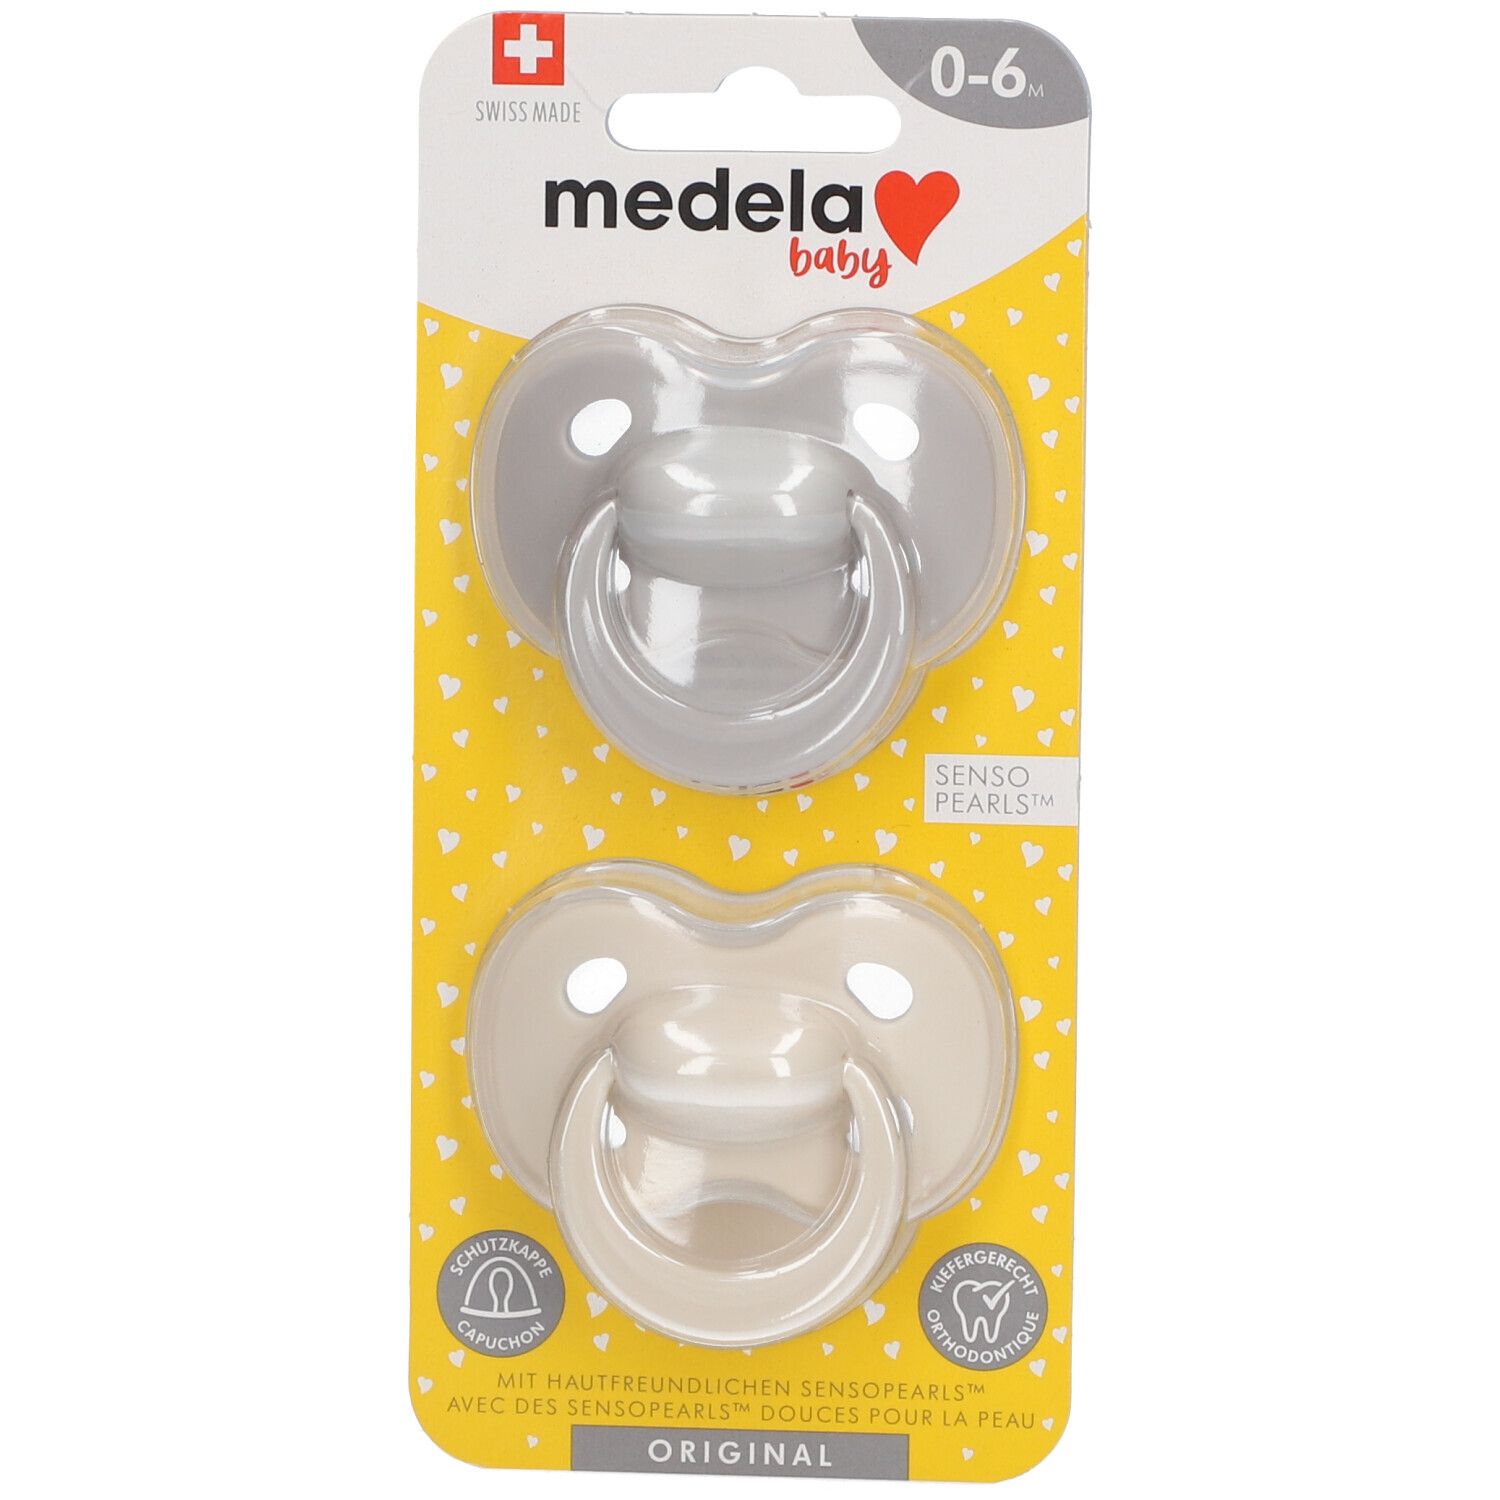 Medela Baby Original Sucette Pastel 0-6 Mois DUO 2 tétine